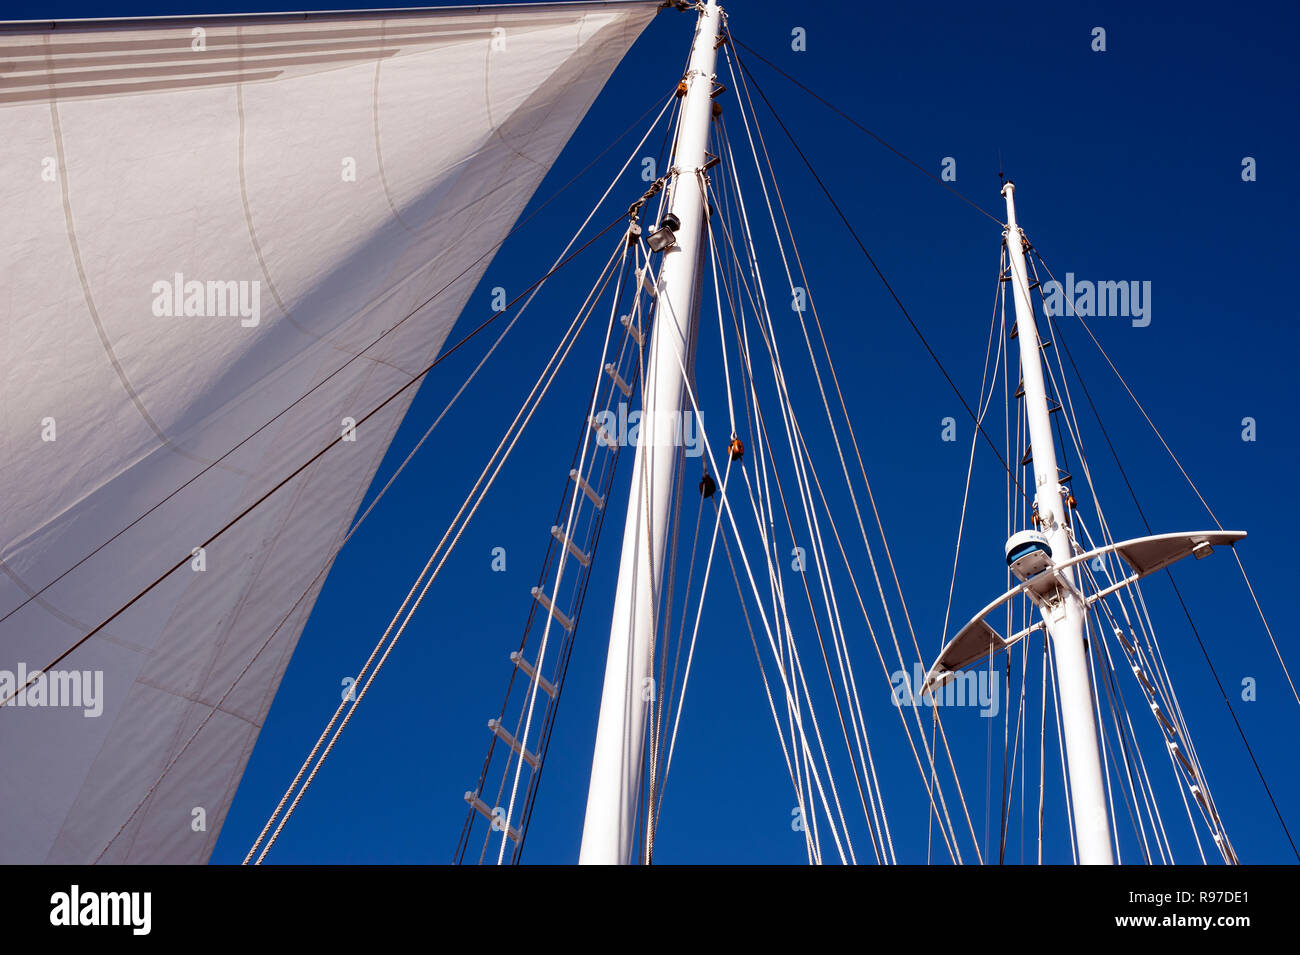 Bellingham Bay Marina avec voiliers amarrés avec ciel bleu et de close-up de voiles, mâts et gréement Banque D'Images